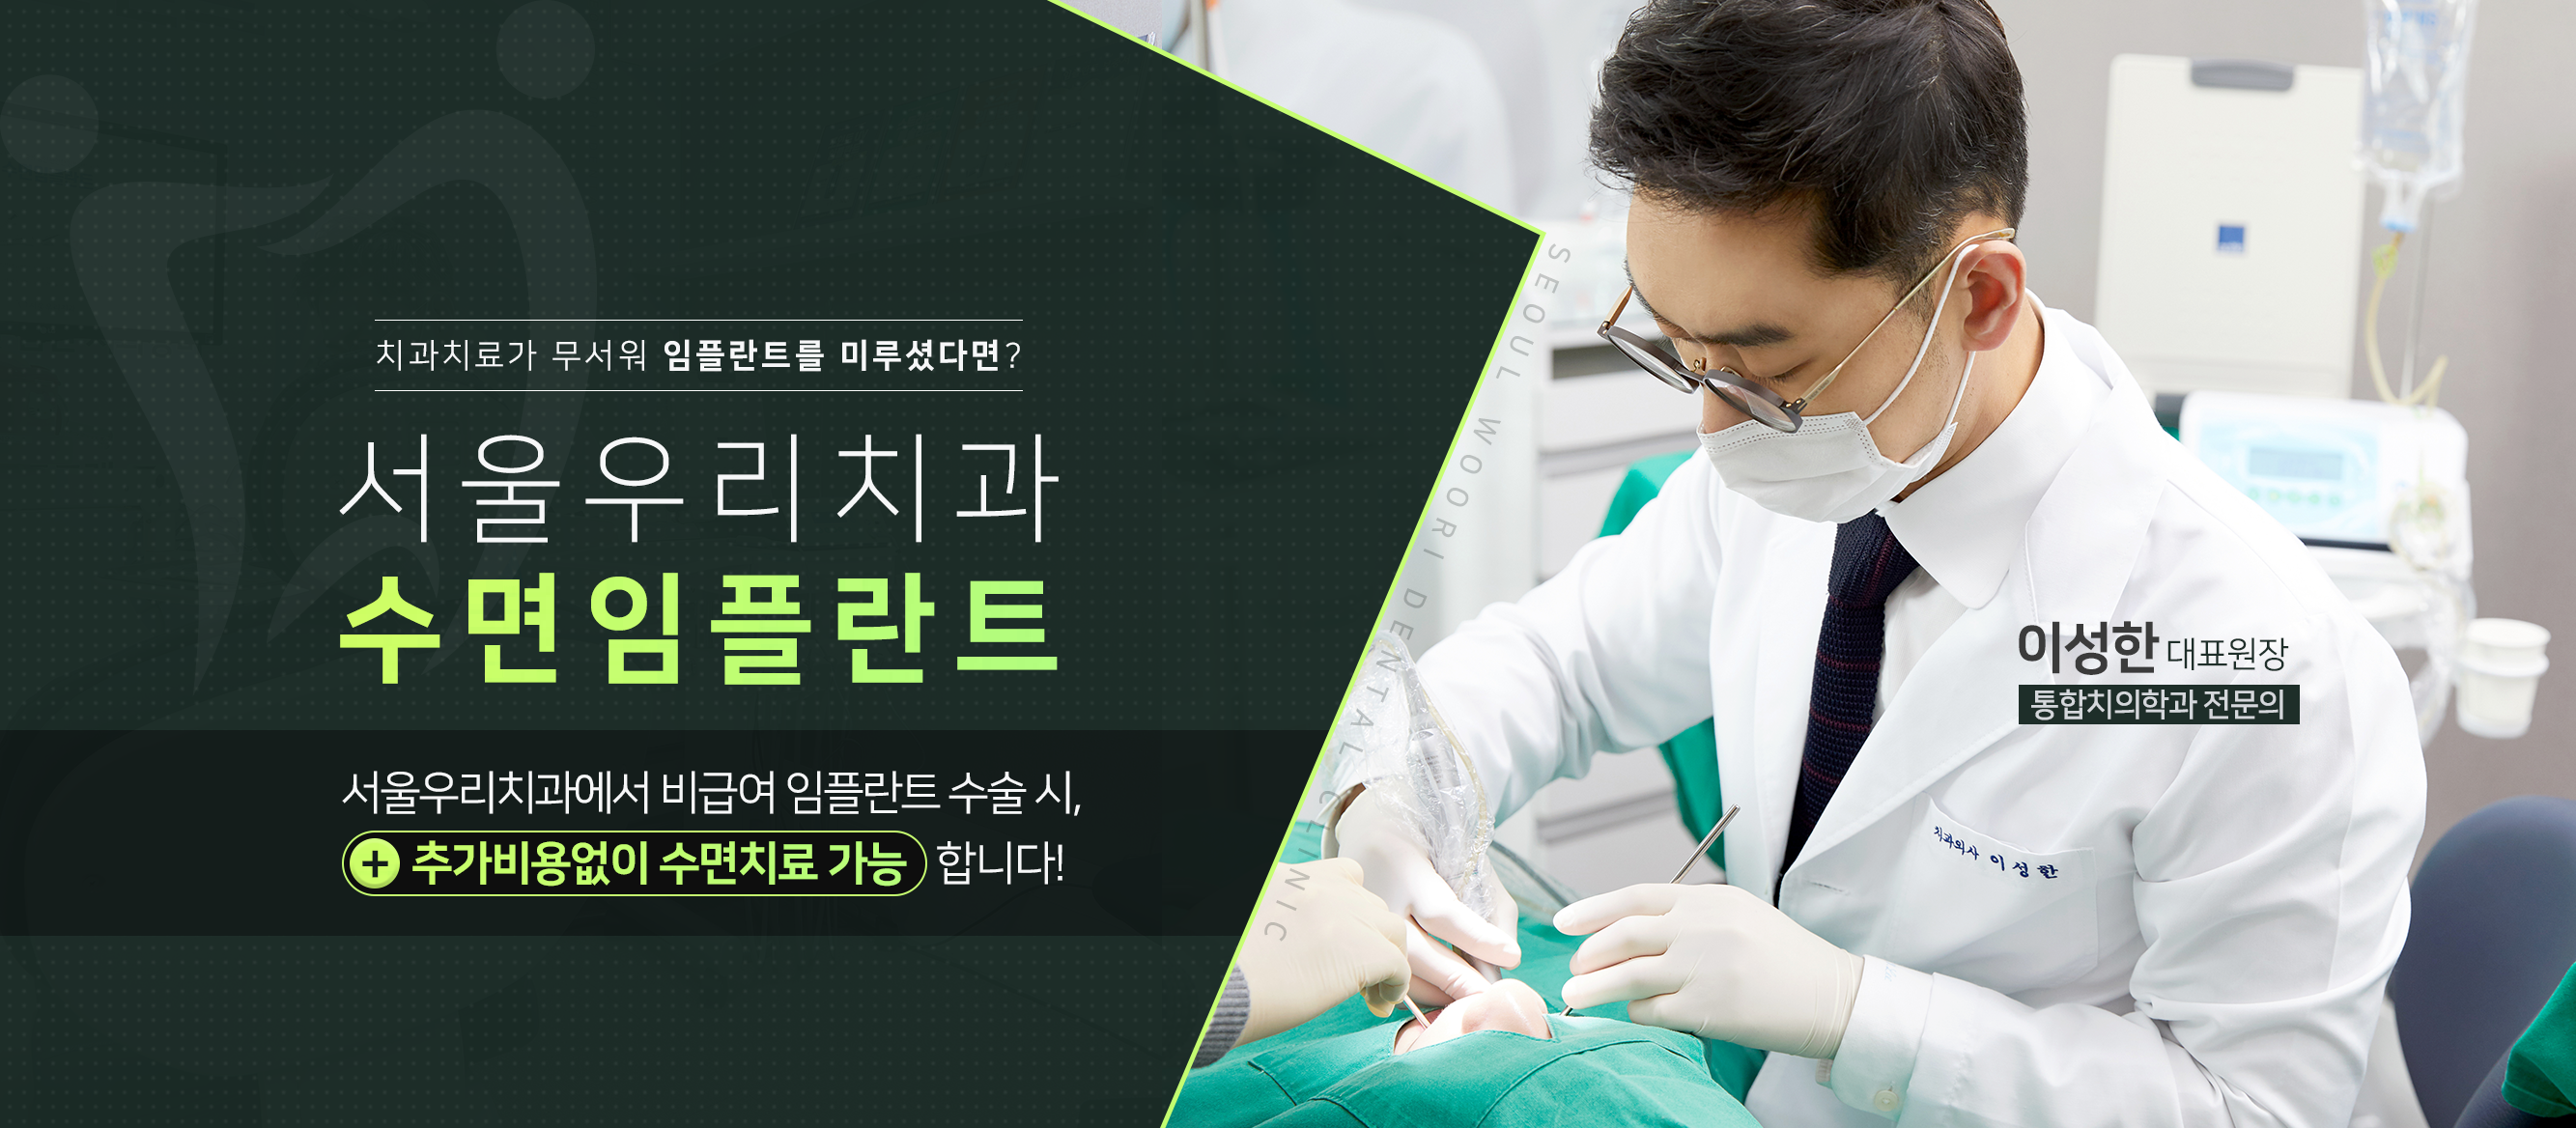 치과치료가-무서워-임플란트를-미루셨다면-서울우리치과-수면-임플란트-비급여-임플란트-수술-시-추가-비용-없이-수면치료-가능합니다